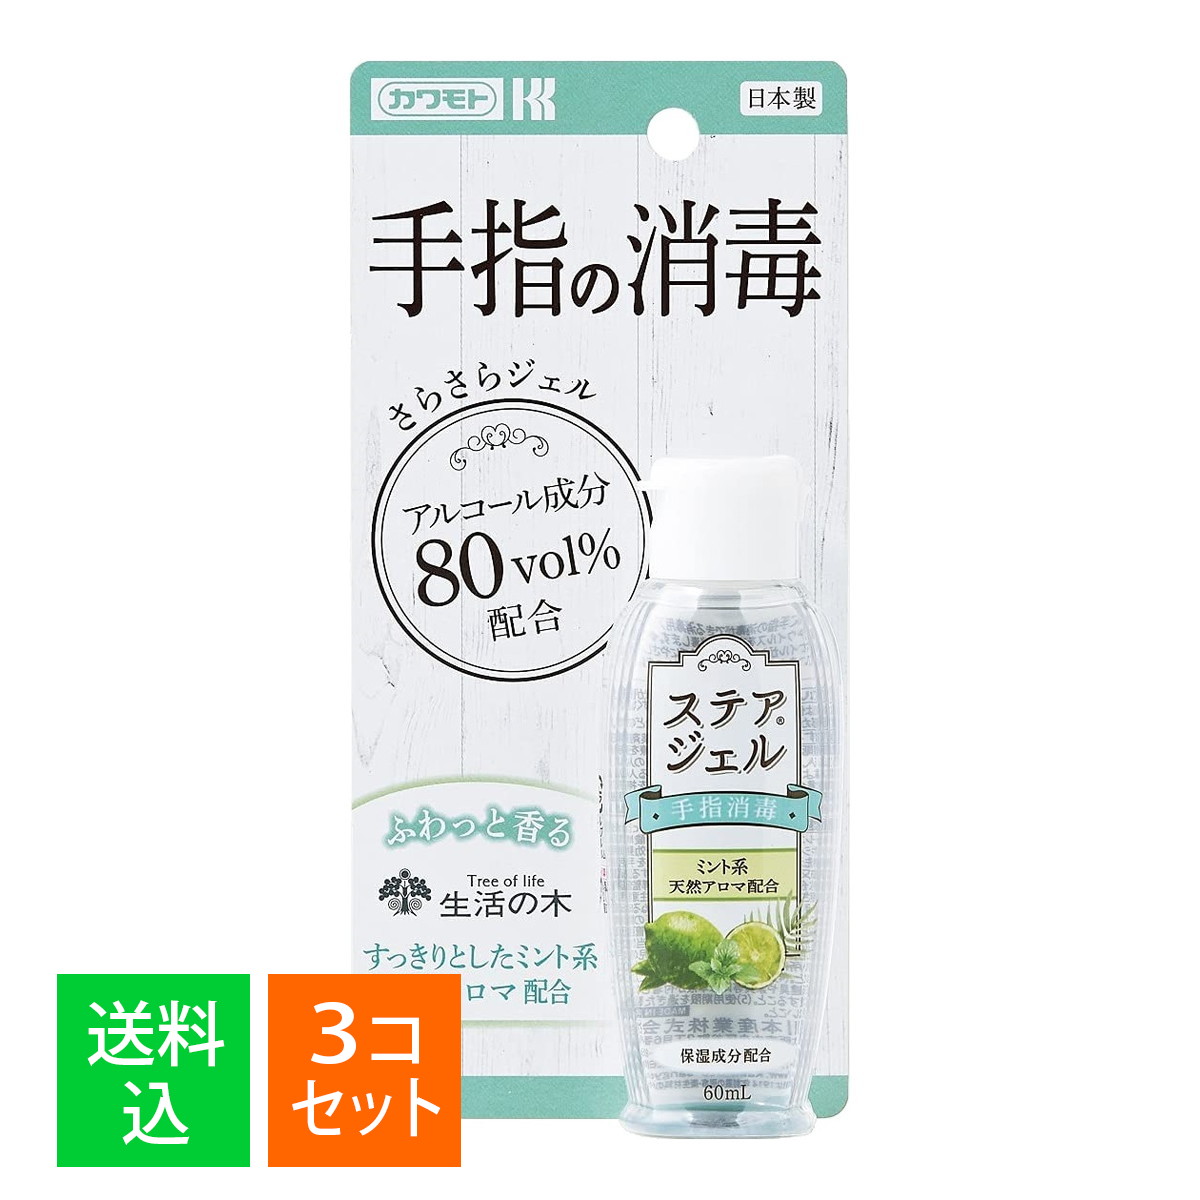 川本産業 カワモト ステアジェルc ミント系の香り 60mL